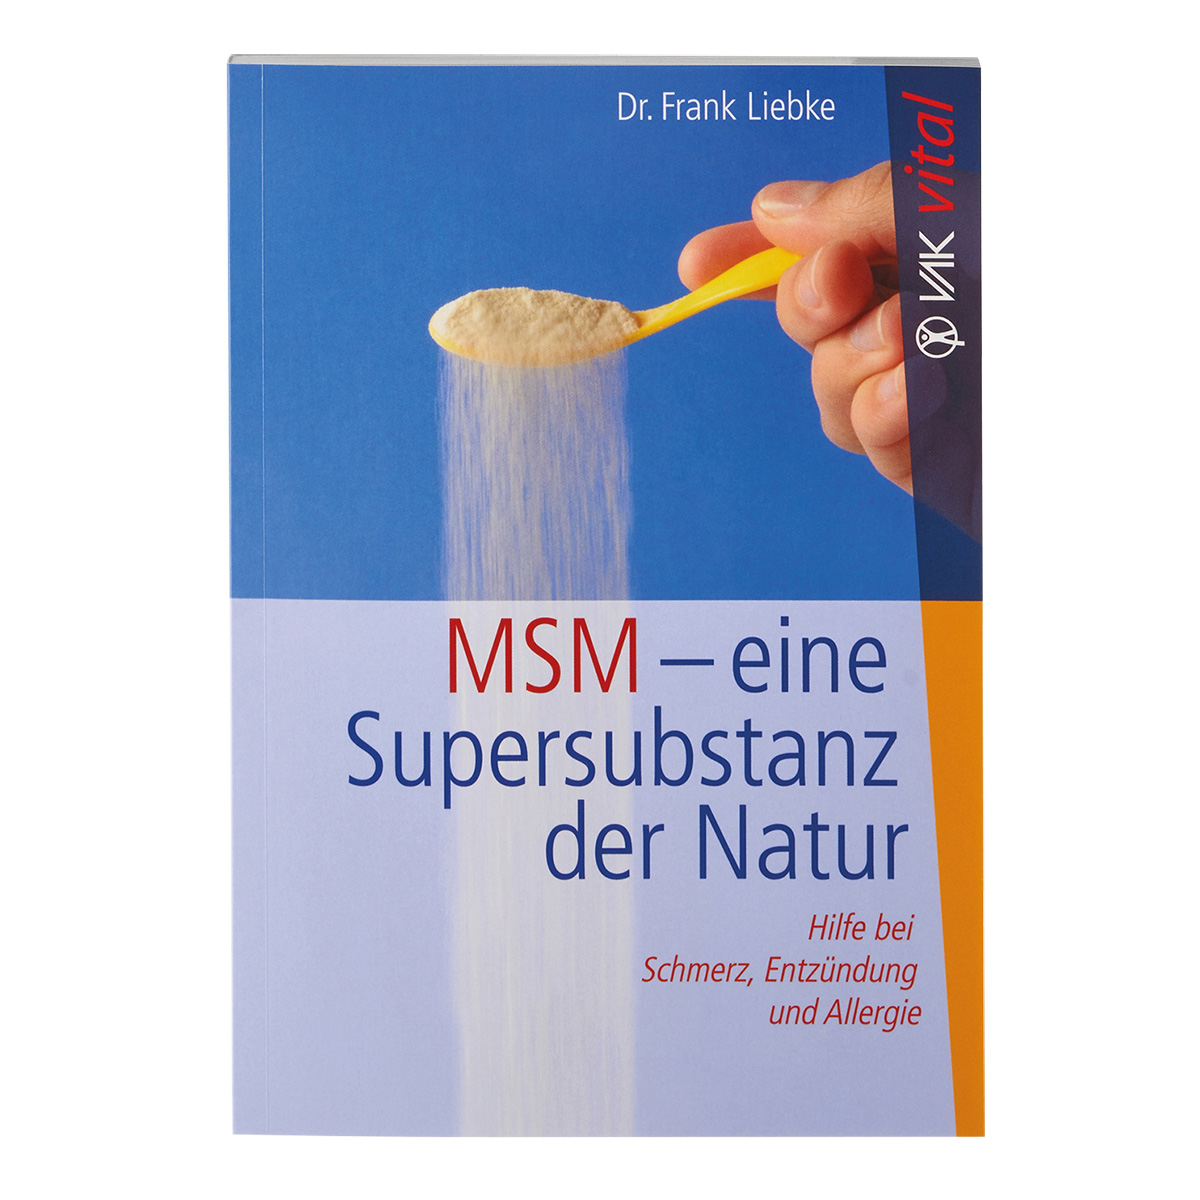 BUCH: MSM eine Supersubstanz der Natur, Dr. Frank Liebke